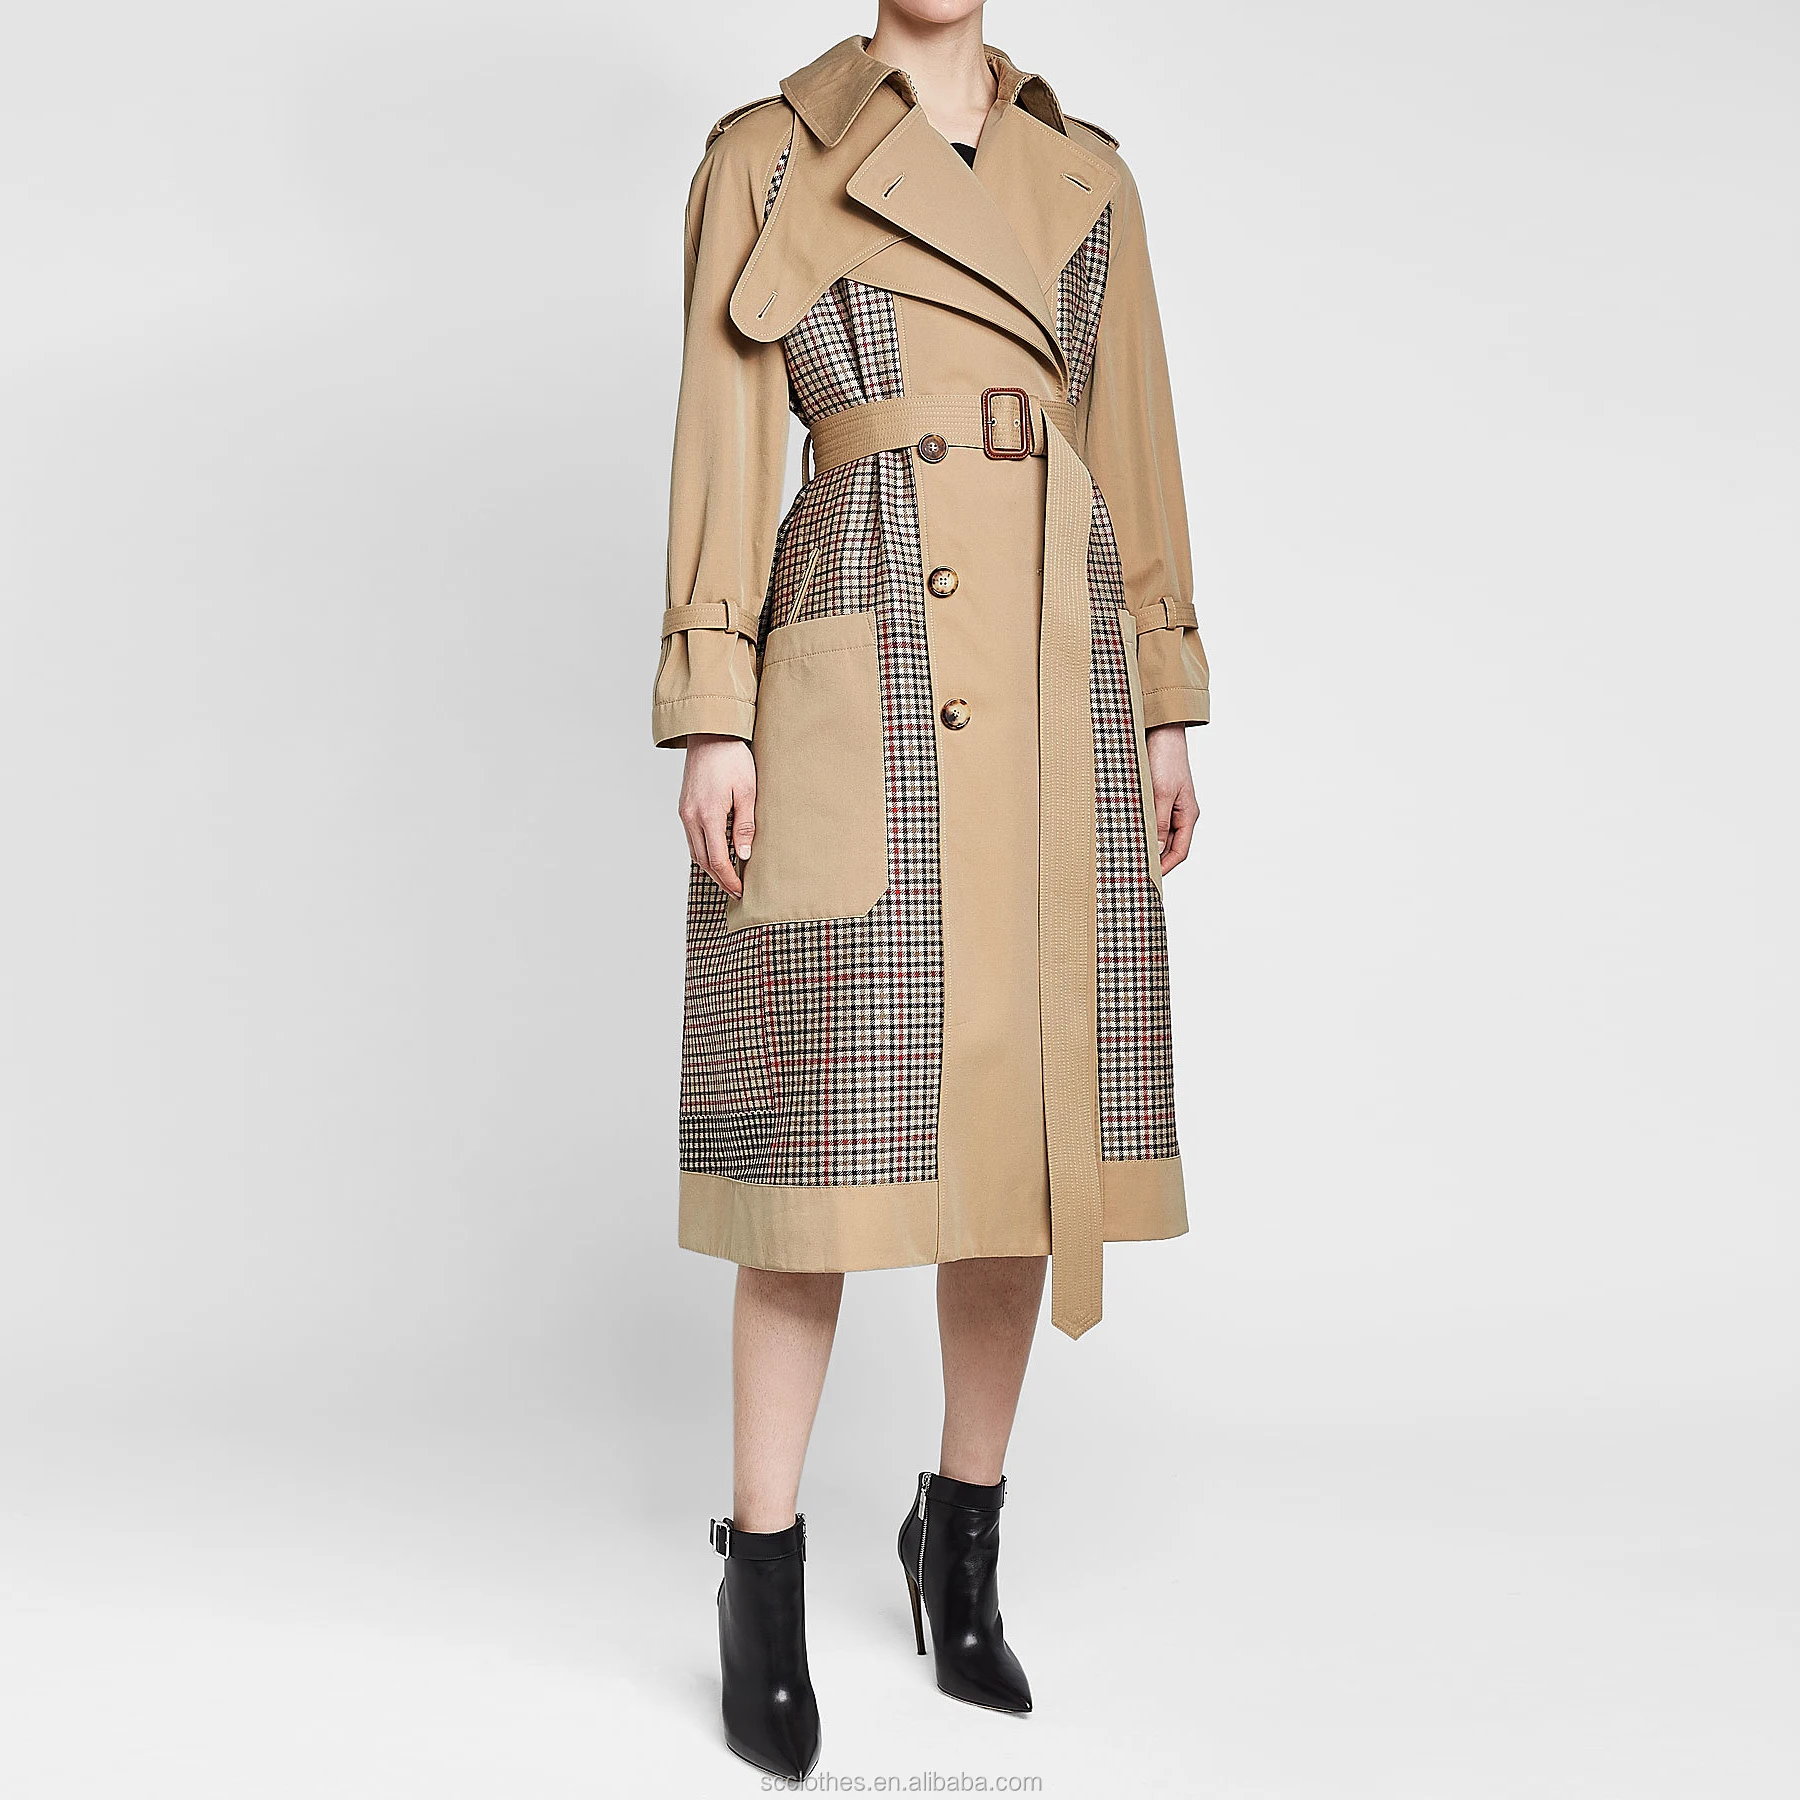 Women's Long Overcoat Rain Trench Coat - Buy Rain Coat,Women's Coat ...